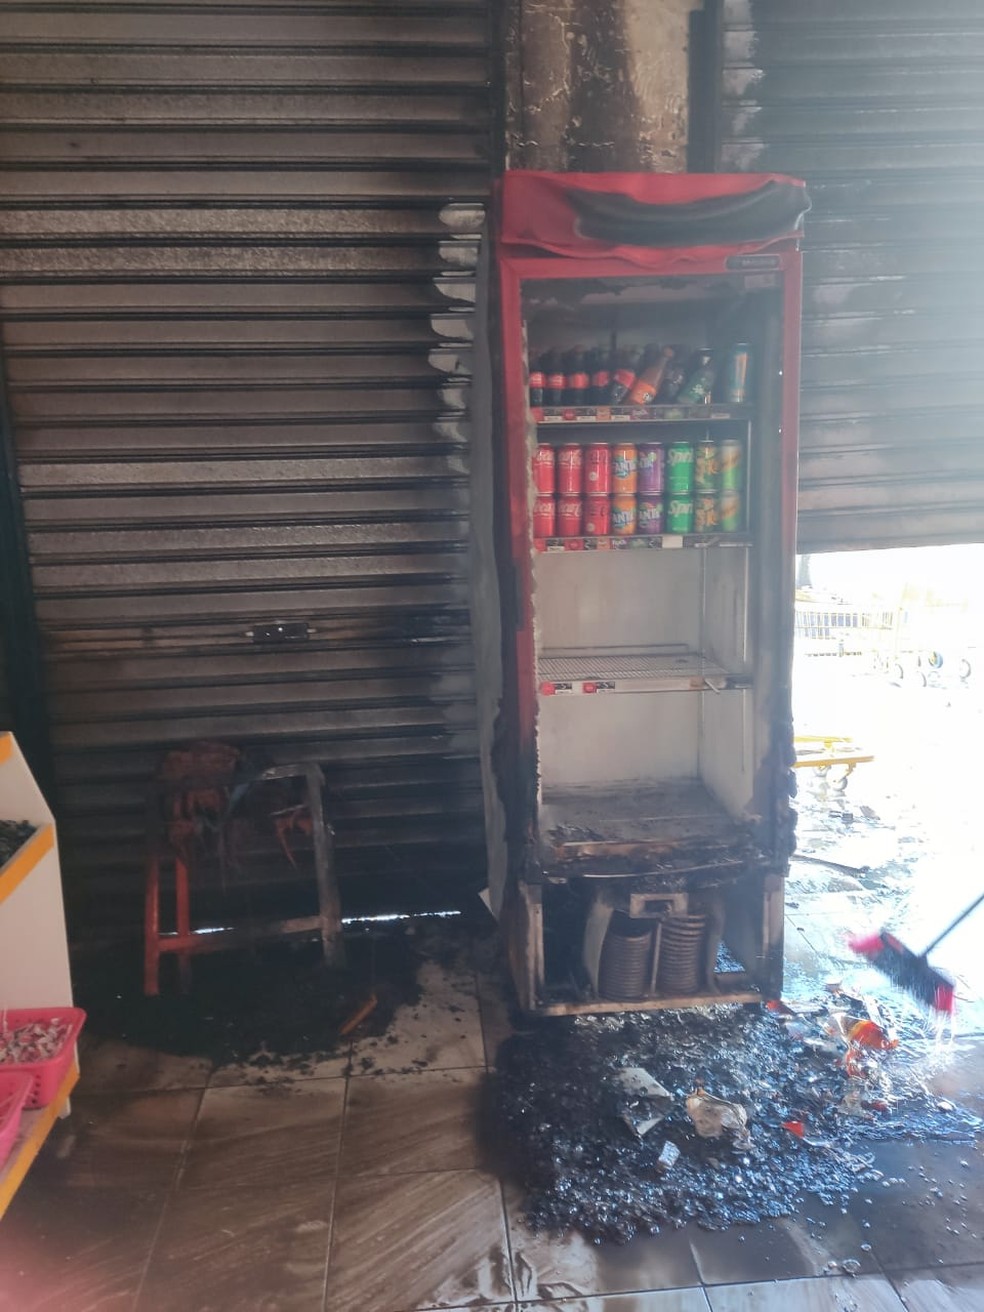 Ataque a supermercado em Nova Parnamirim. Fogo destruiu freezer com refrigerantes e atingiu o teto do estabelecimento — Foto: Cedida